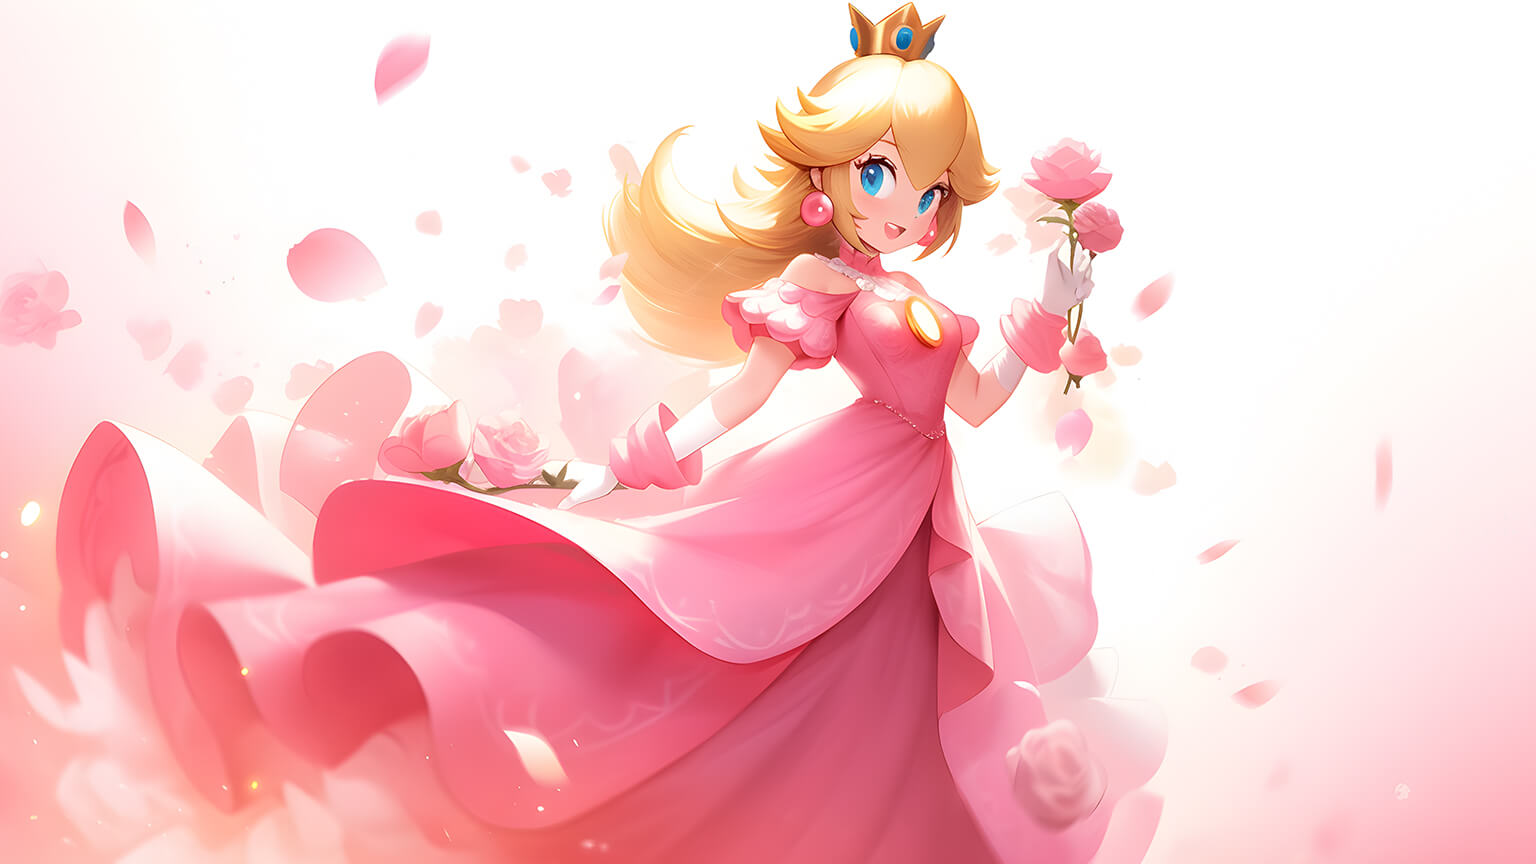 Super Mario Princess Peach with Roses Desktop Wallpaper in 4K